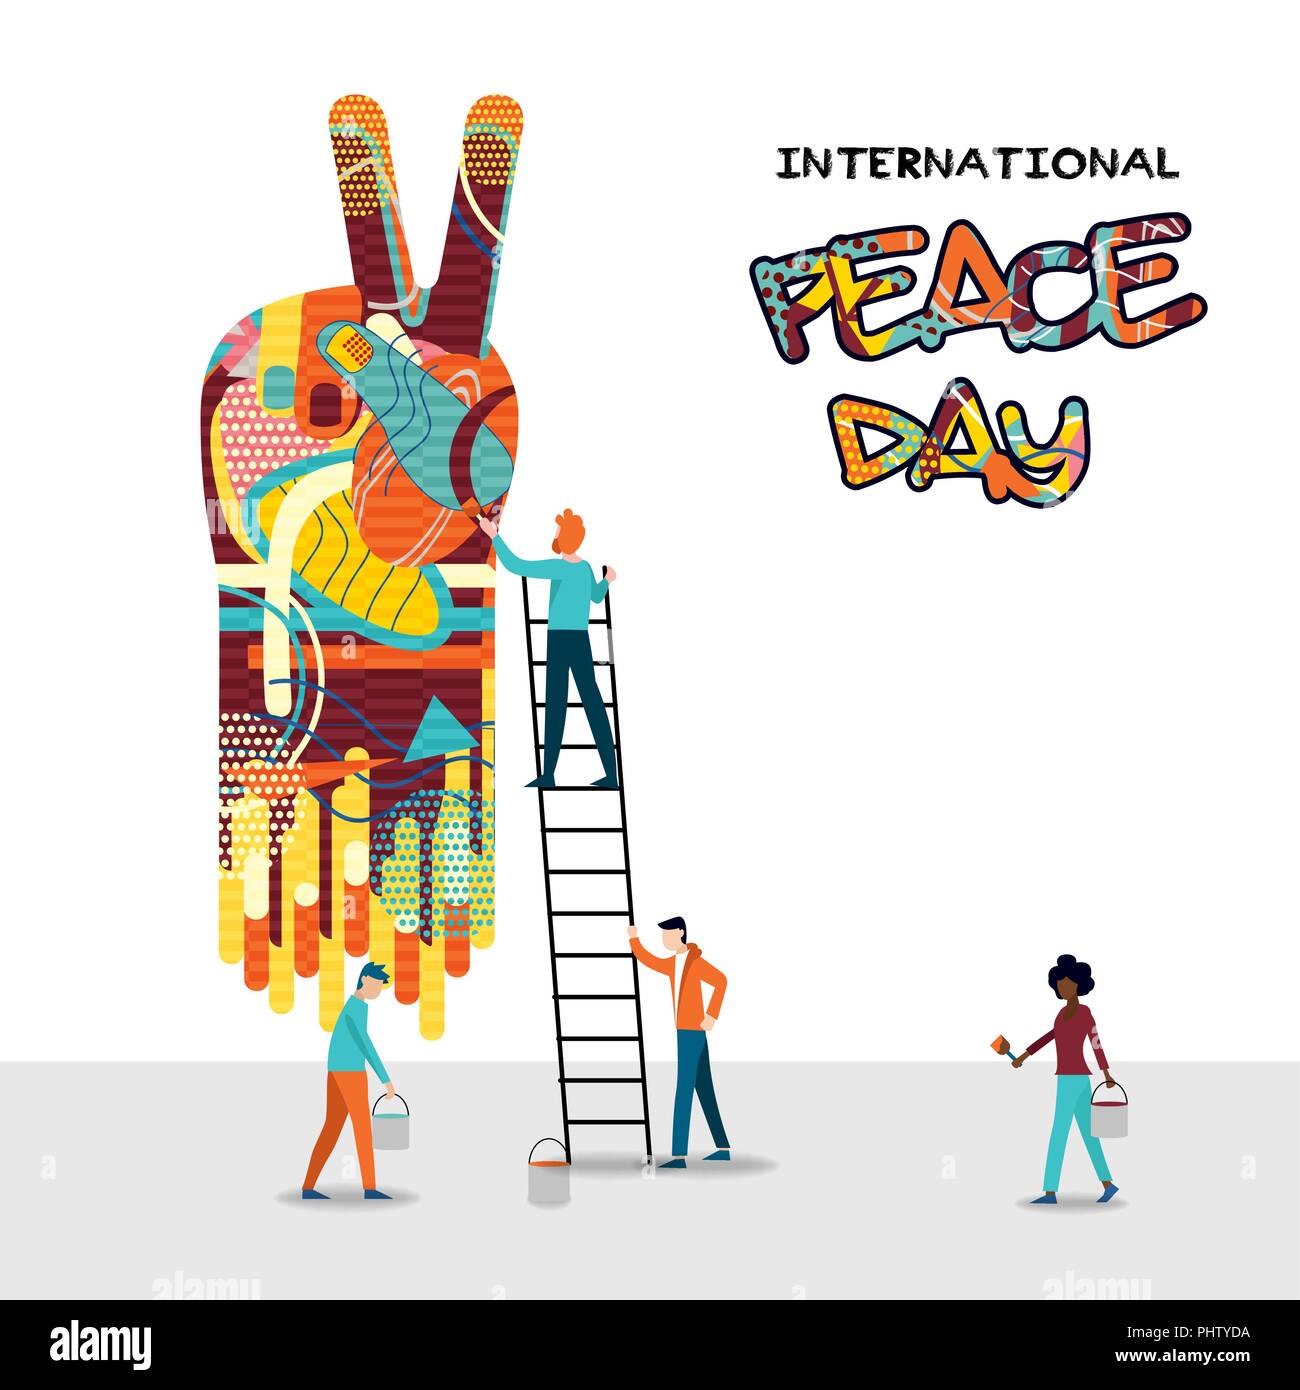 Internationaler Friedenstag Karte für die Welt helfen und die Kultur der Einheit. Diverse Freund Gruppe teamwork Abbildung. EPS 10 Vektor. Stock Vektor